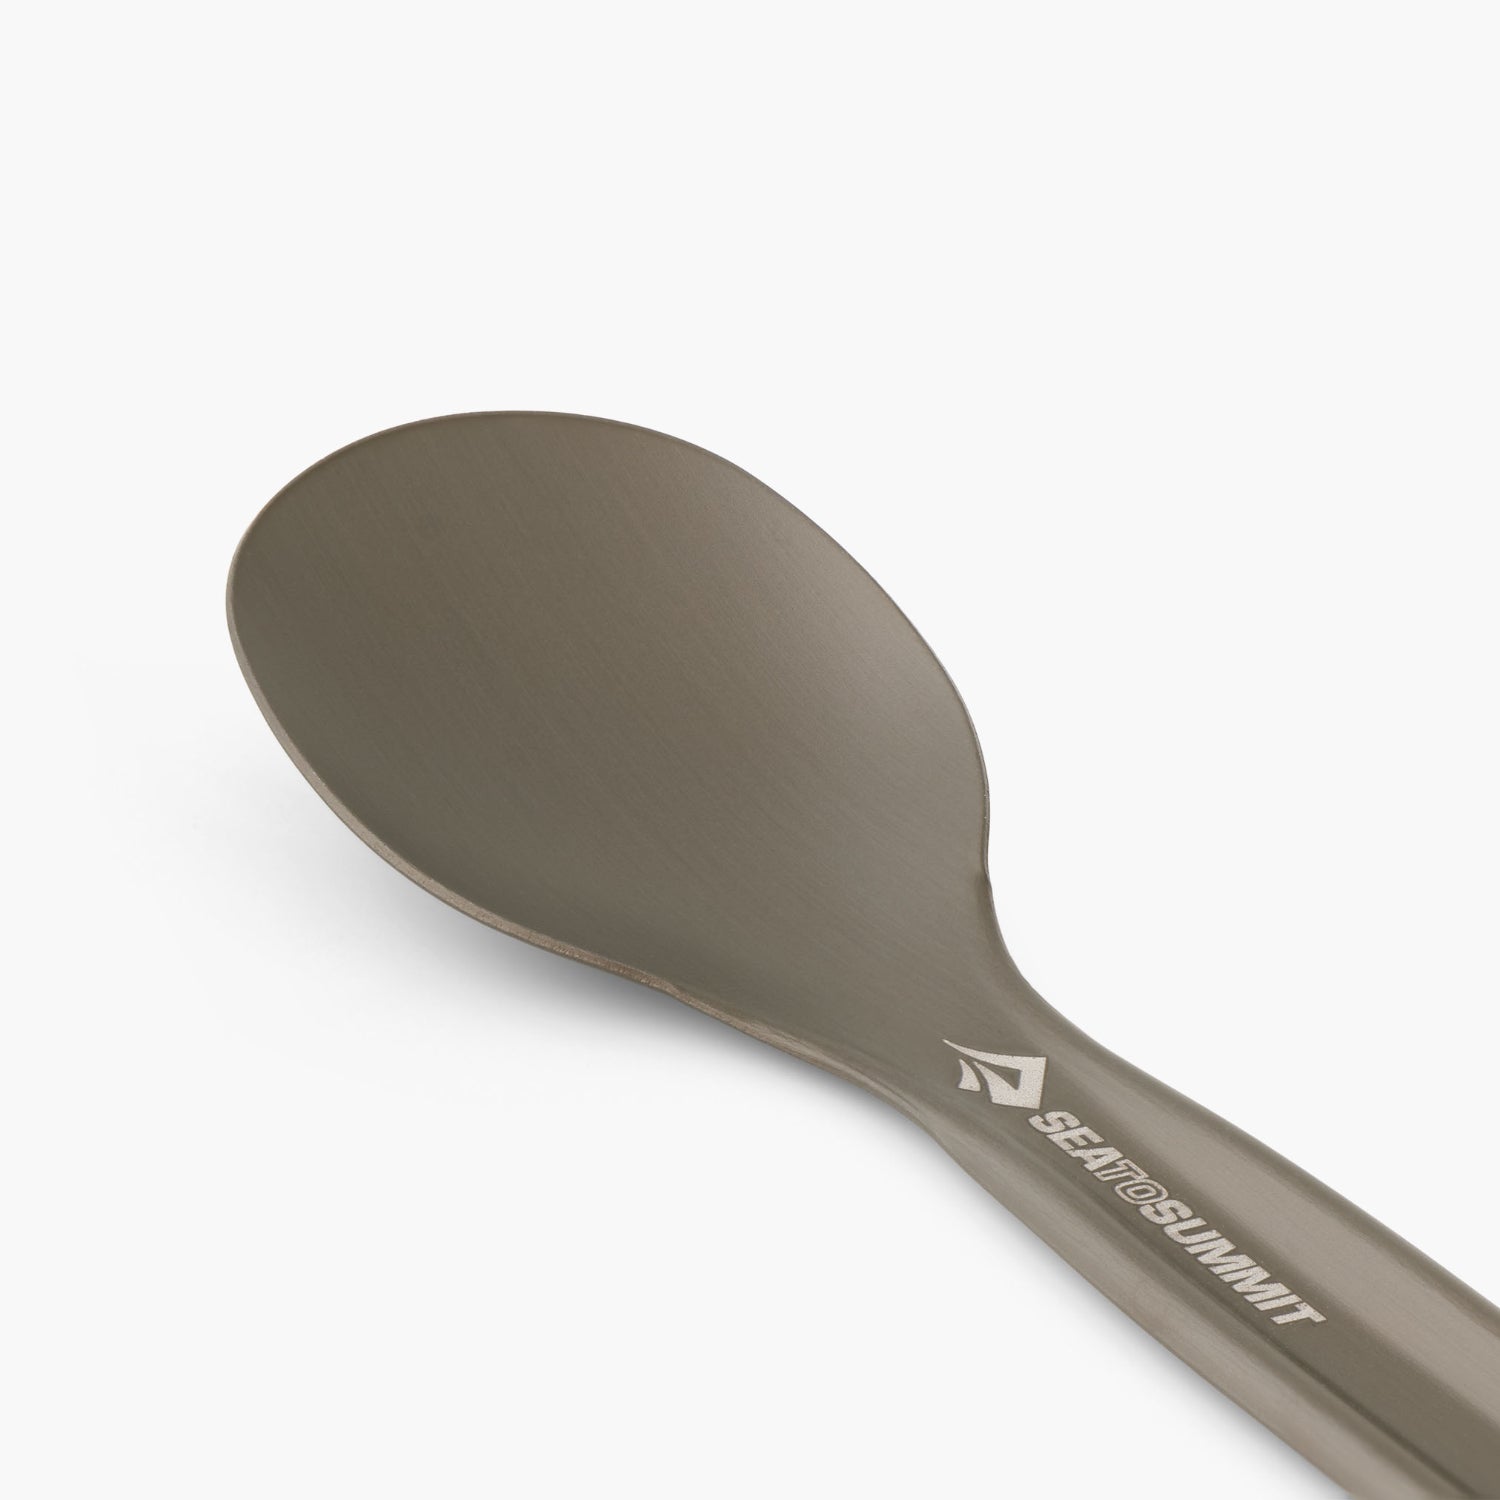 Sea to Summit Frontier Ultralight Long Handle aluminium Spoon